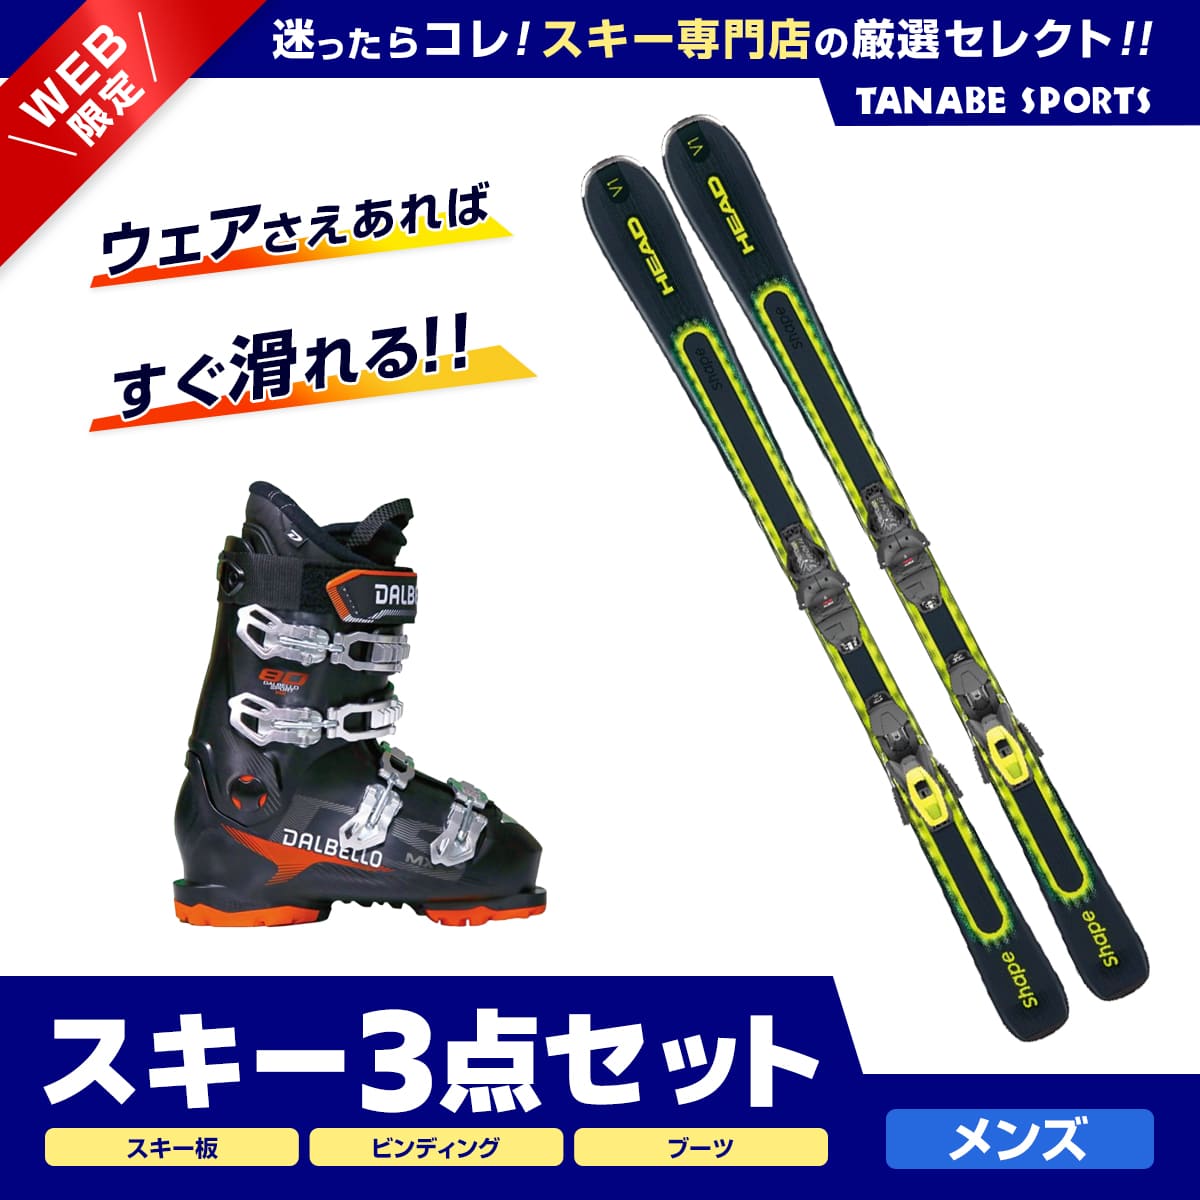 スキーセット スキー板141㎝ スキーブーツ24.5㎝ 女性用 レディース用